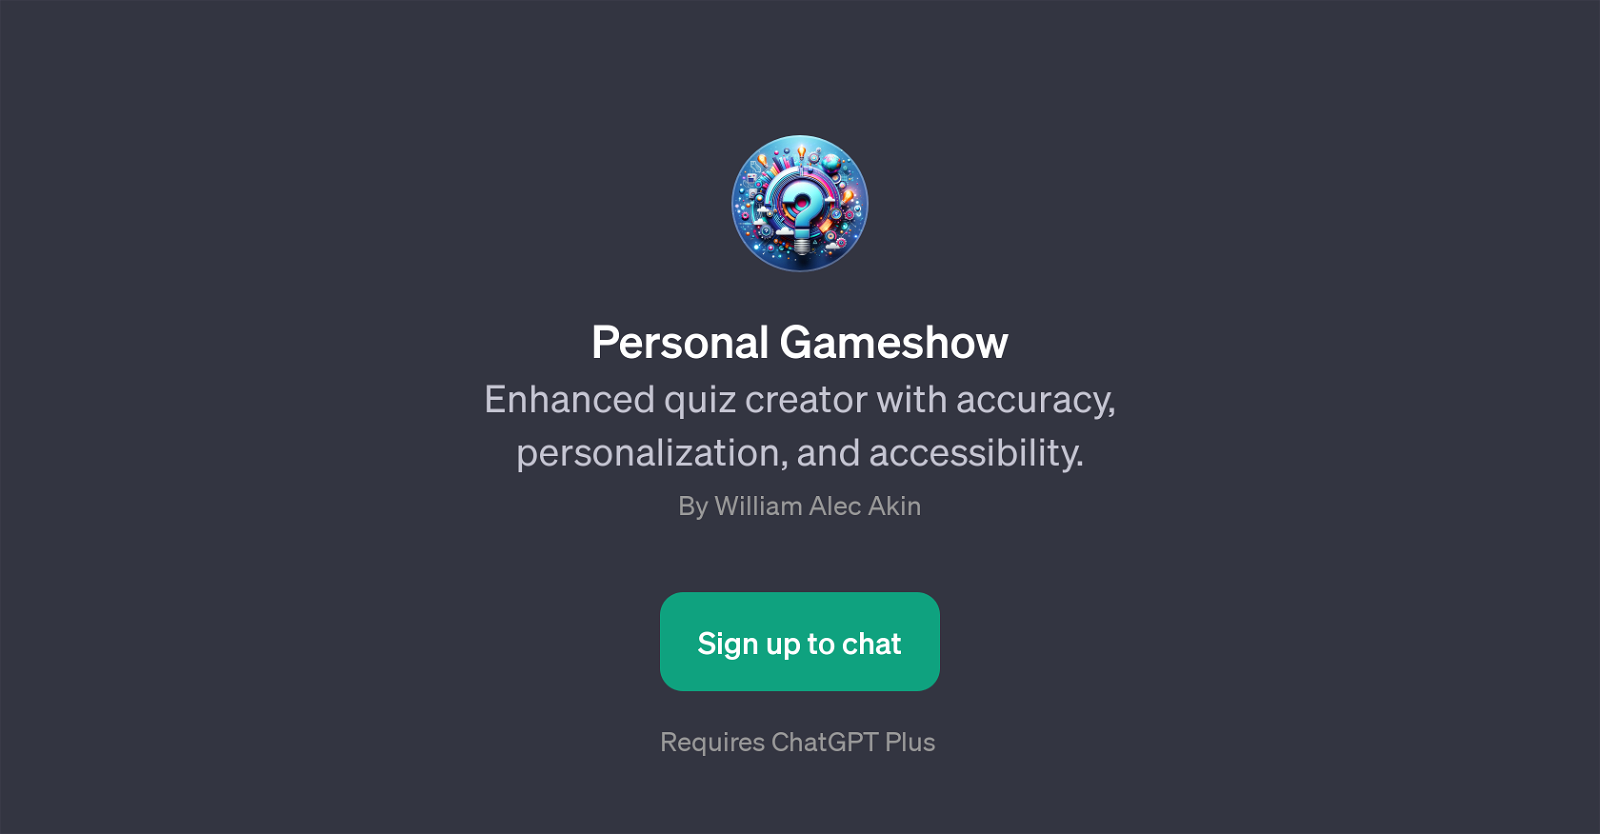 Personal Gameshow website